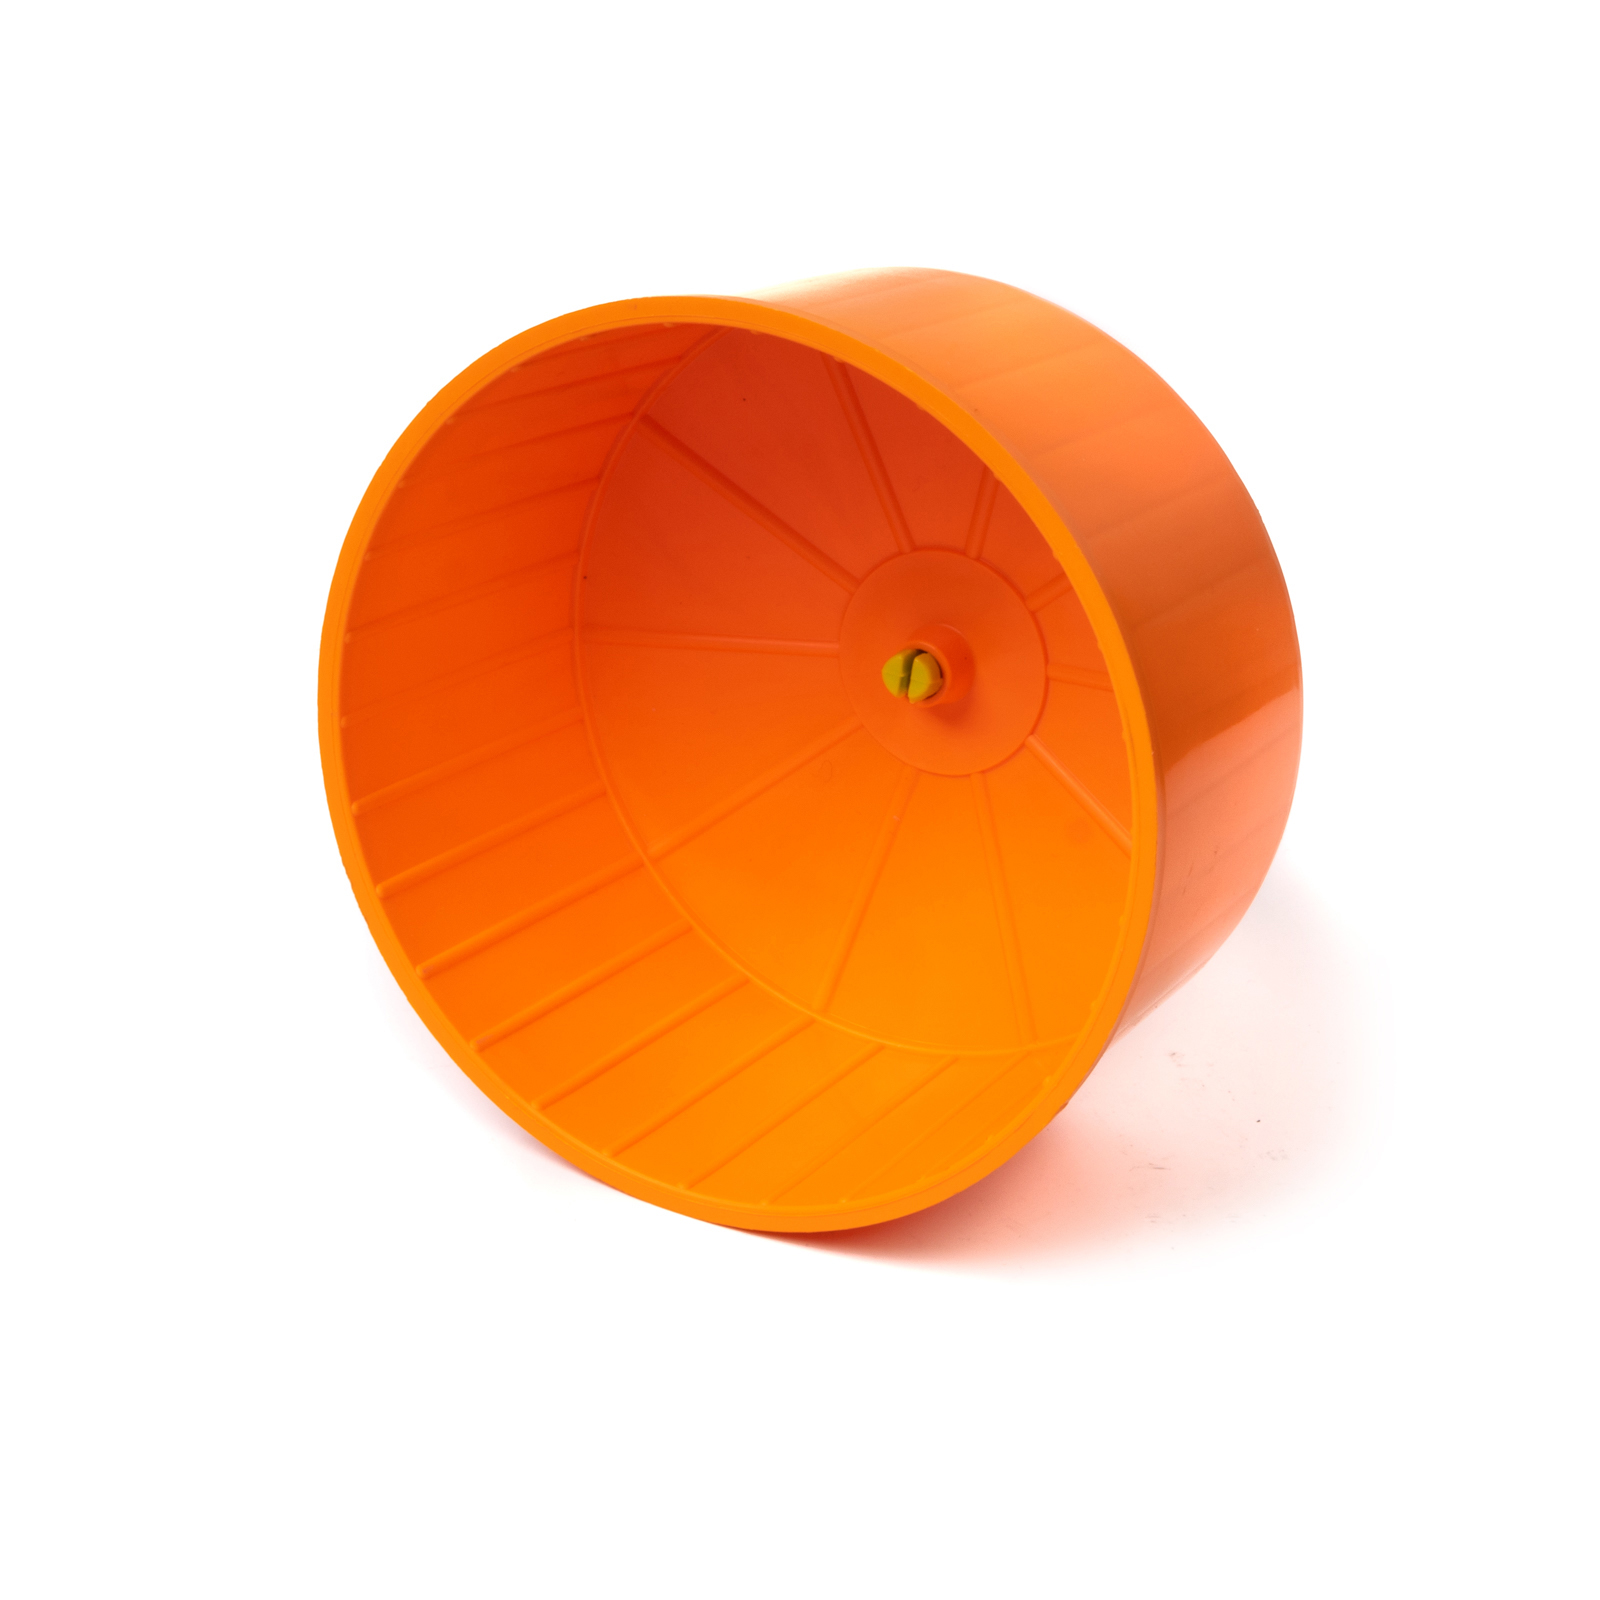 

Колесо для бега грызунов Voltrega, оранжевое, 14.5х9см, Оранжевый, VOLTREGA Колесо для бега грызунов, оранжевое, 14.5х9см (Испания)